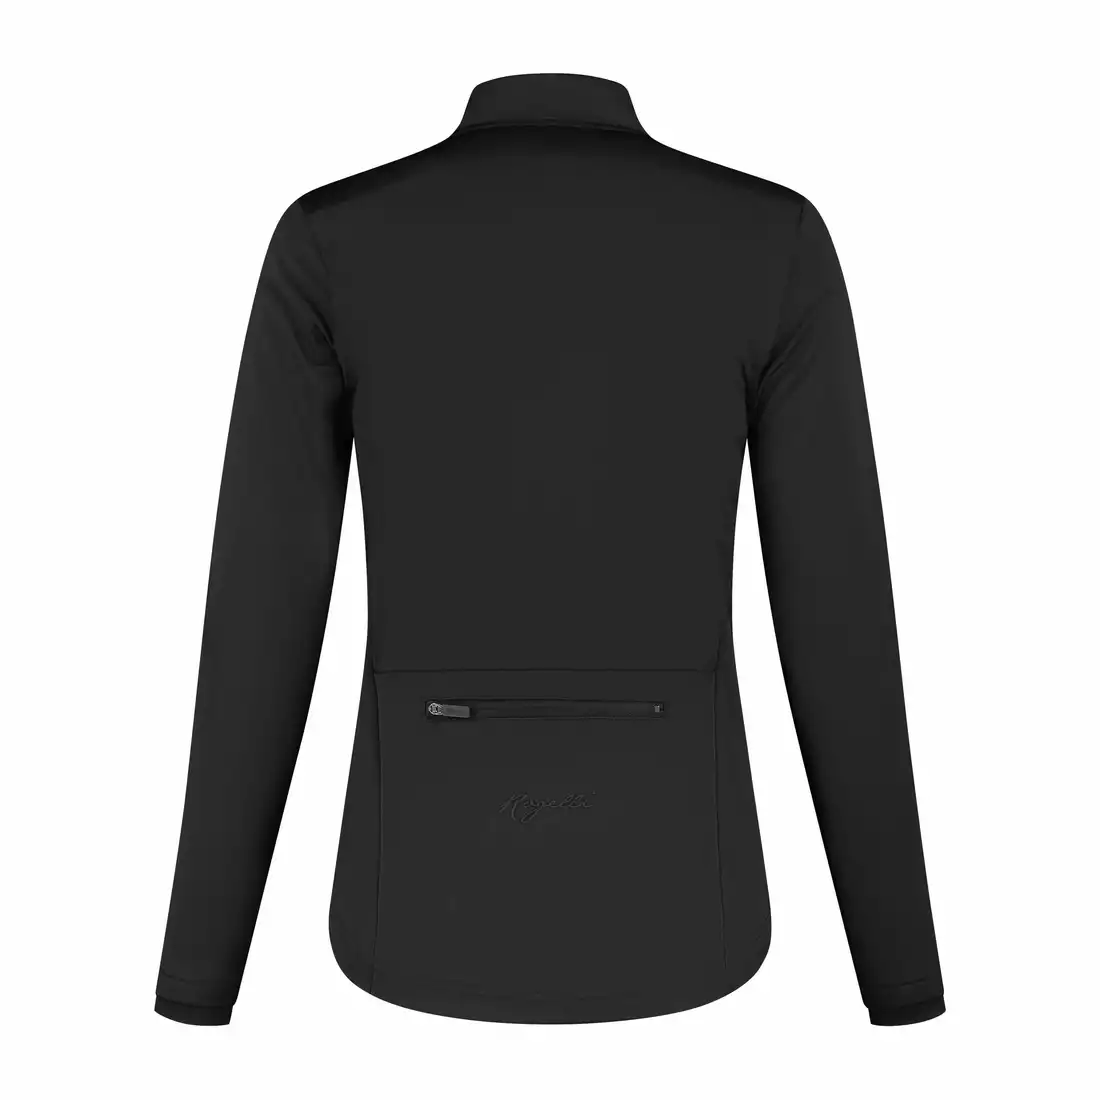 ROGELLI CORE women's winter cycling jacket, black